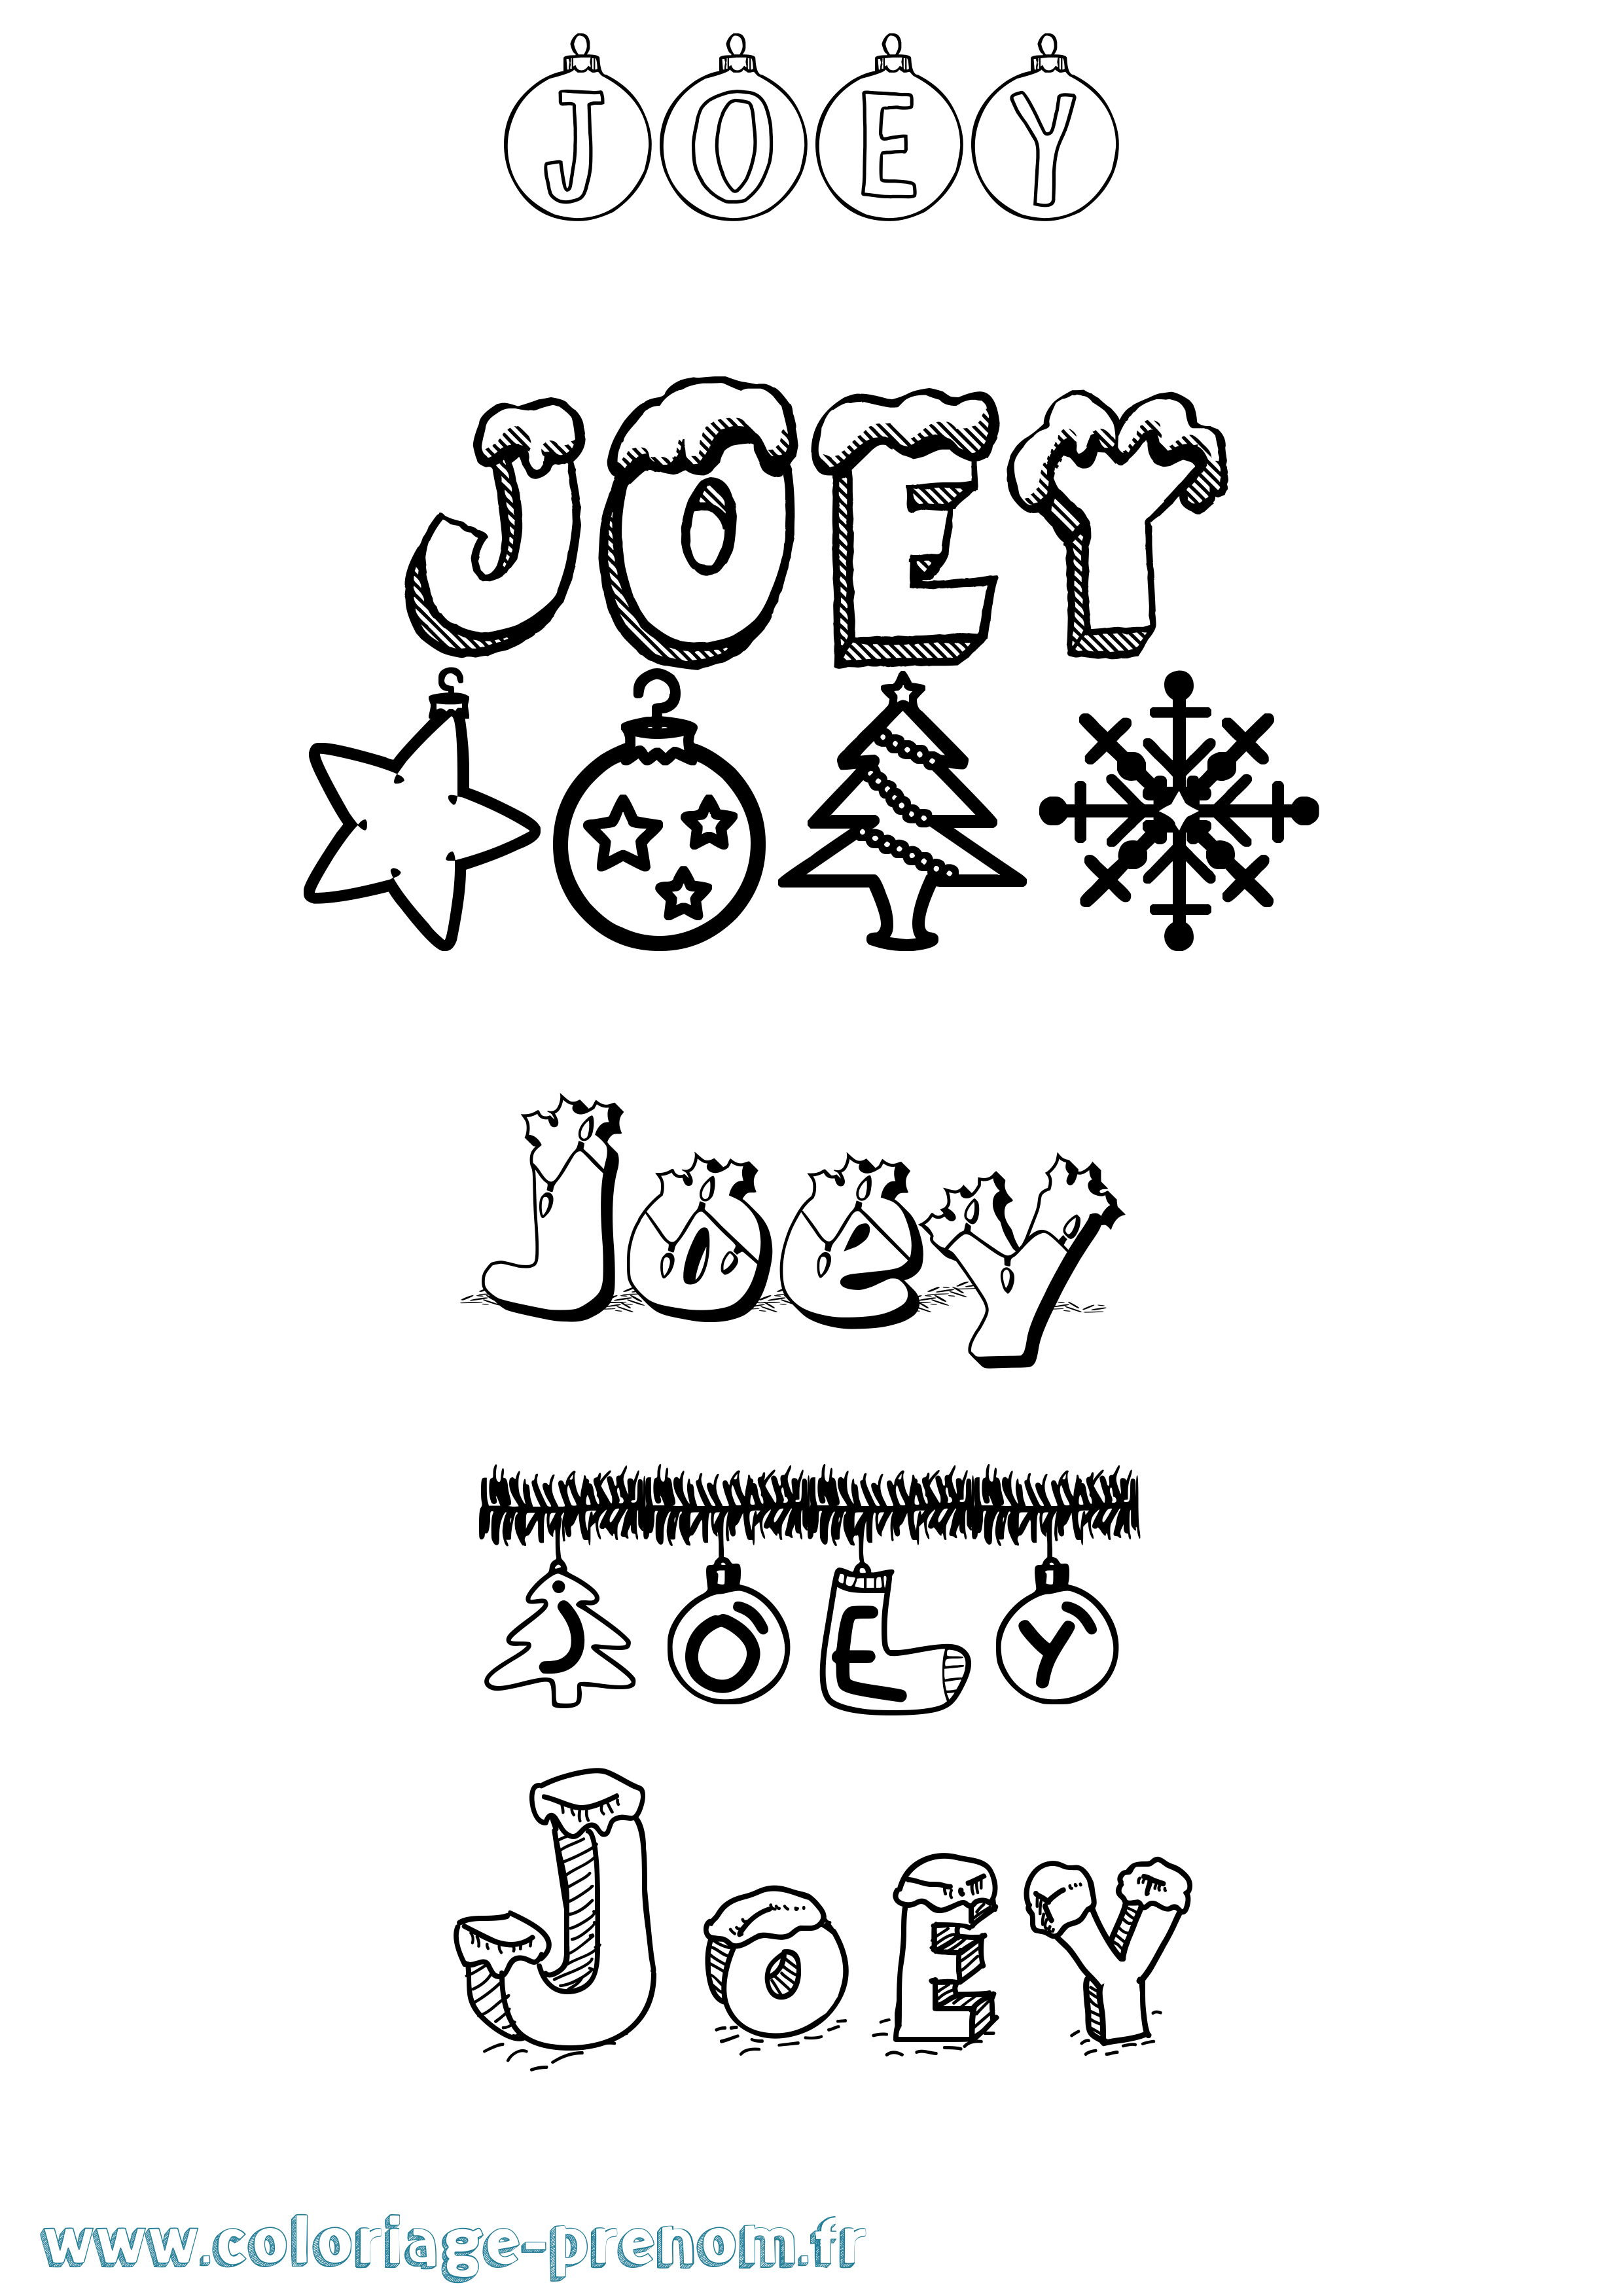 Coloriage prénom Joey Noël